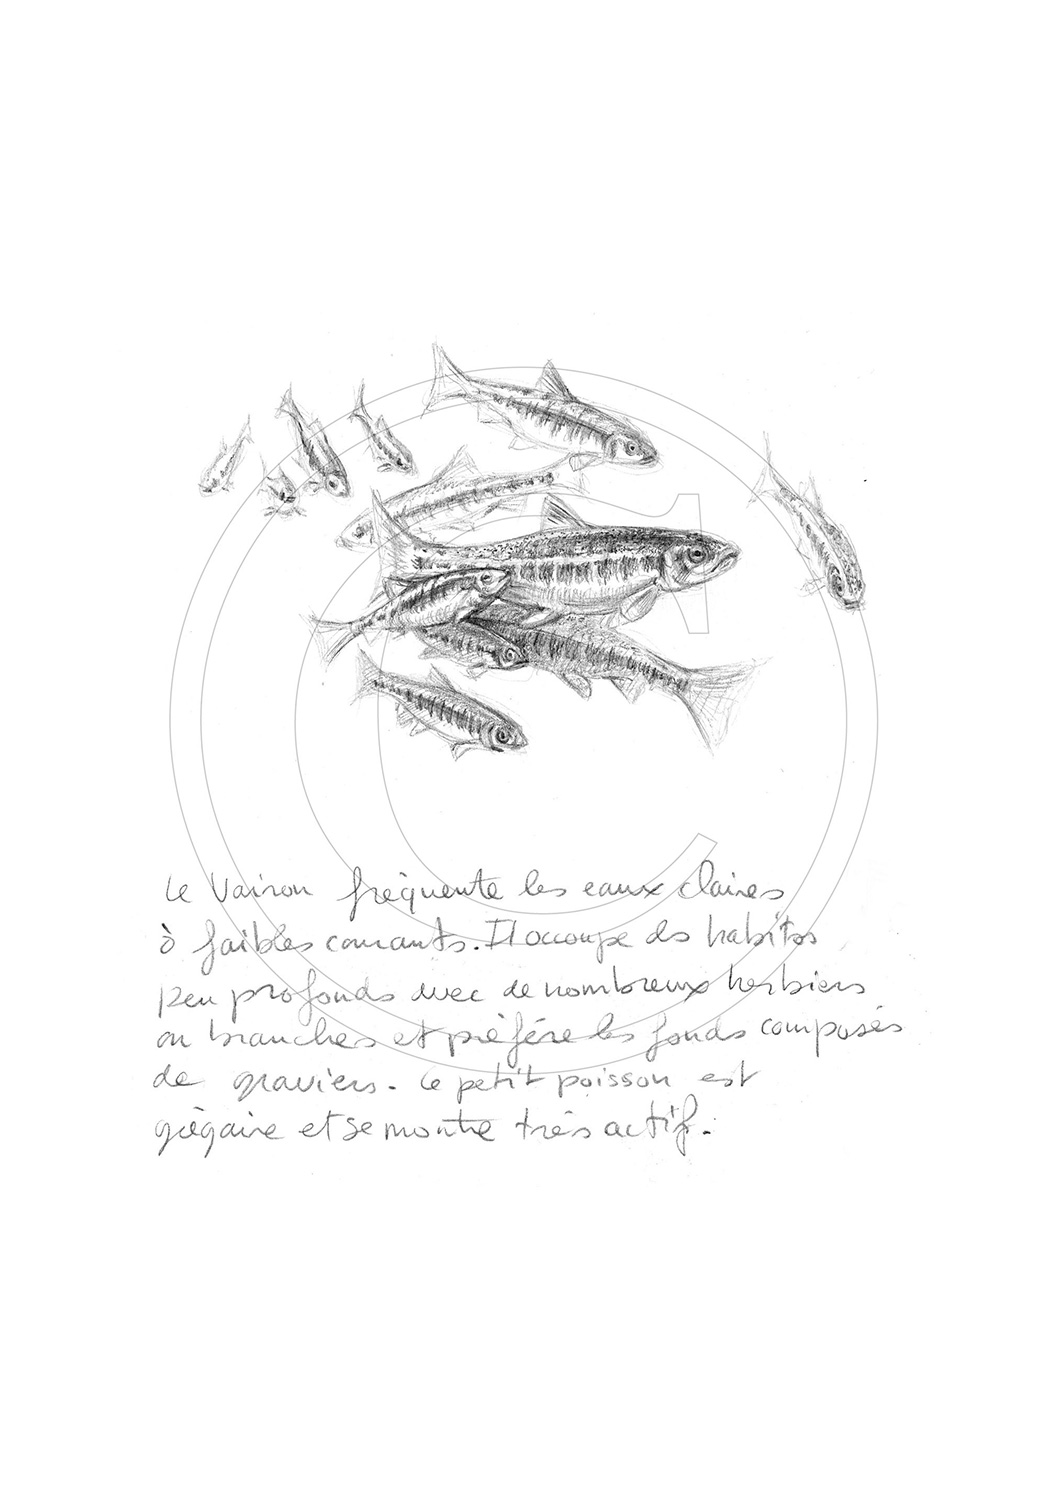 Marcello-art: Aquatic fauna 45 - Minnows